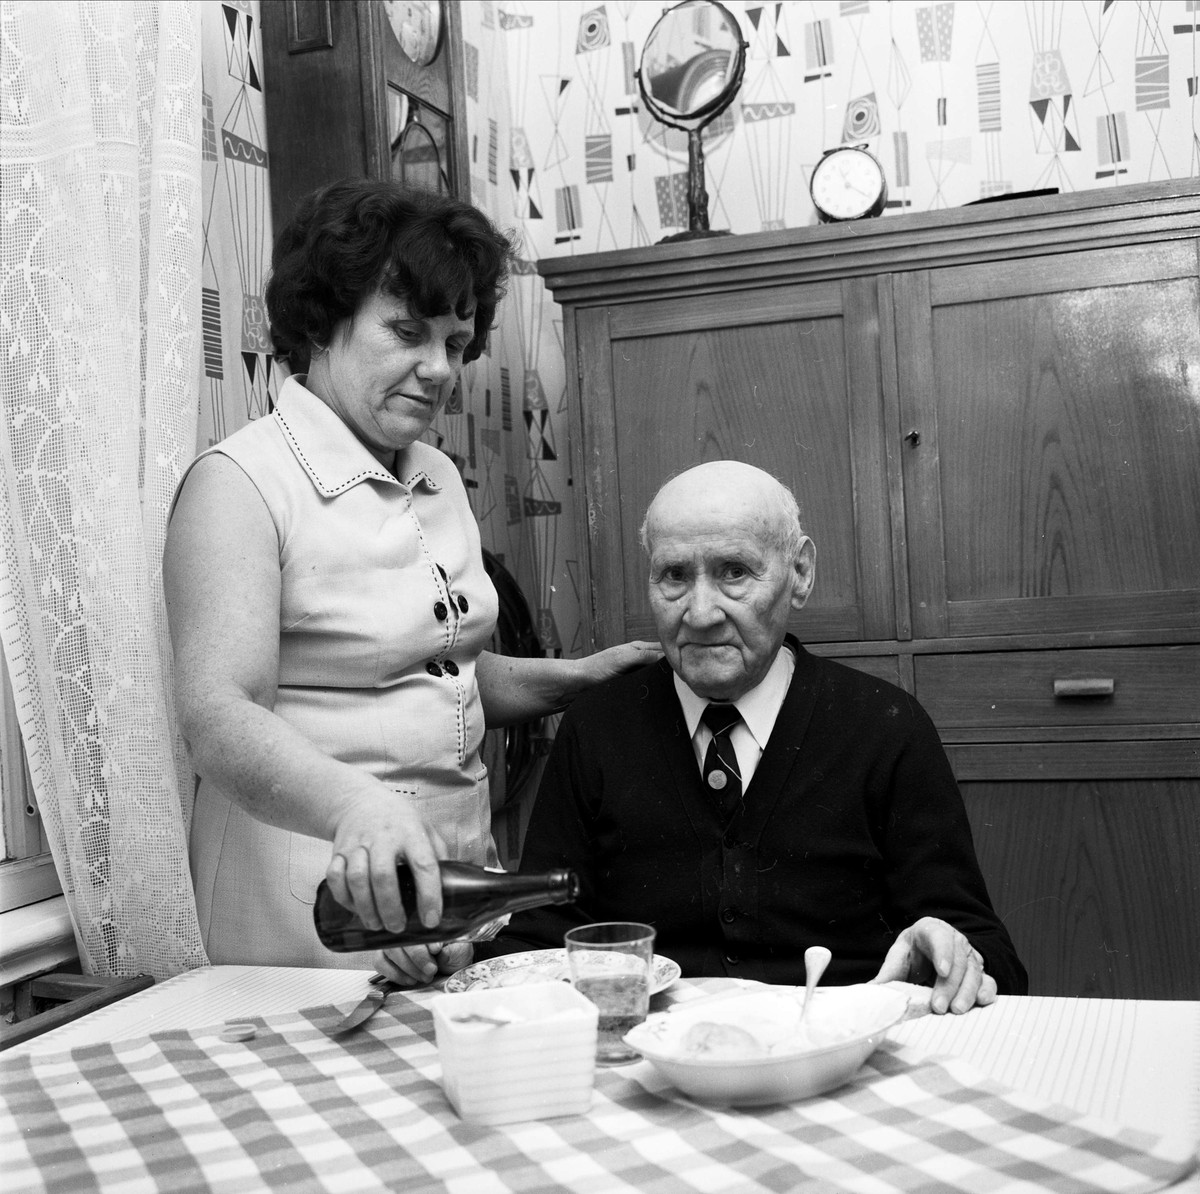 Förre köpmannen Manne Pettersson i Tierp fick 1967 en
timmes tillsyn varje dag av hemsamariten Fanny Pettersson.
Hon var en av 18 hemsamariter i Tierps köping. De fick
framför allt hjälpa till med städning, matlagning och
bakning.
”Hemsamariterna hade fått en viktig uppgift att
fylla i dagens samhälle”. Deras insatser avlastade
ålderdomshemmen och gav de äldre möjlighet att
bo kvar i sina bostäder.